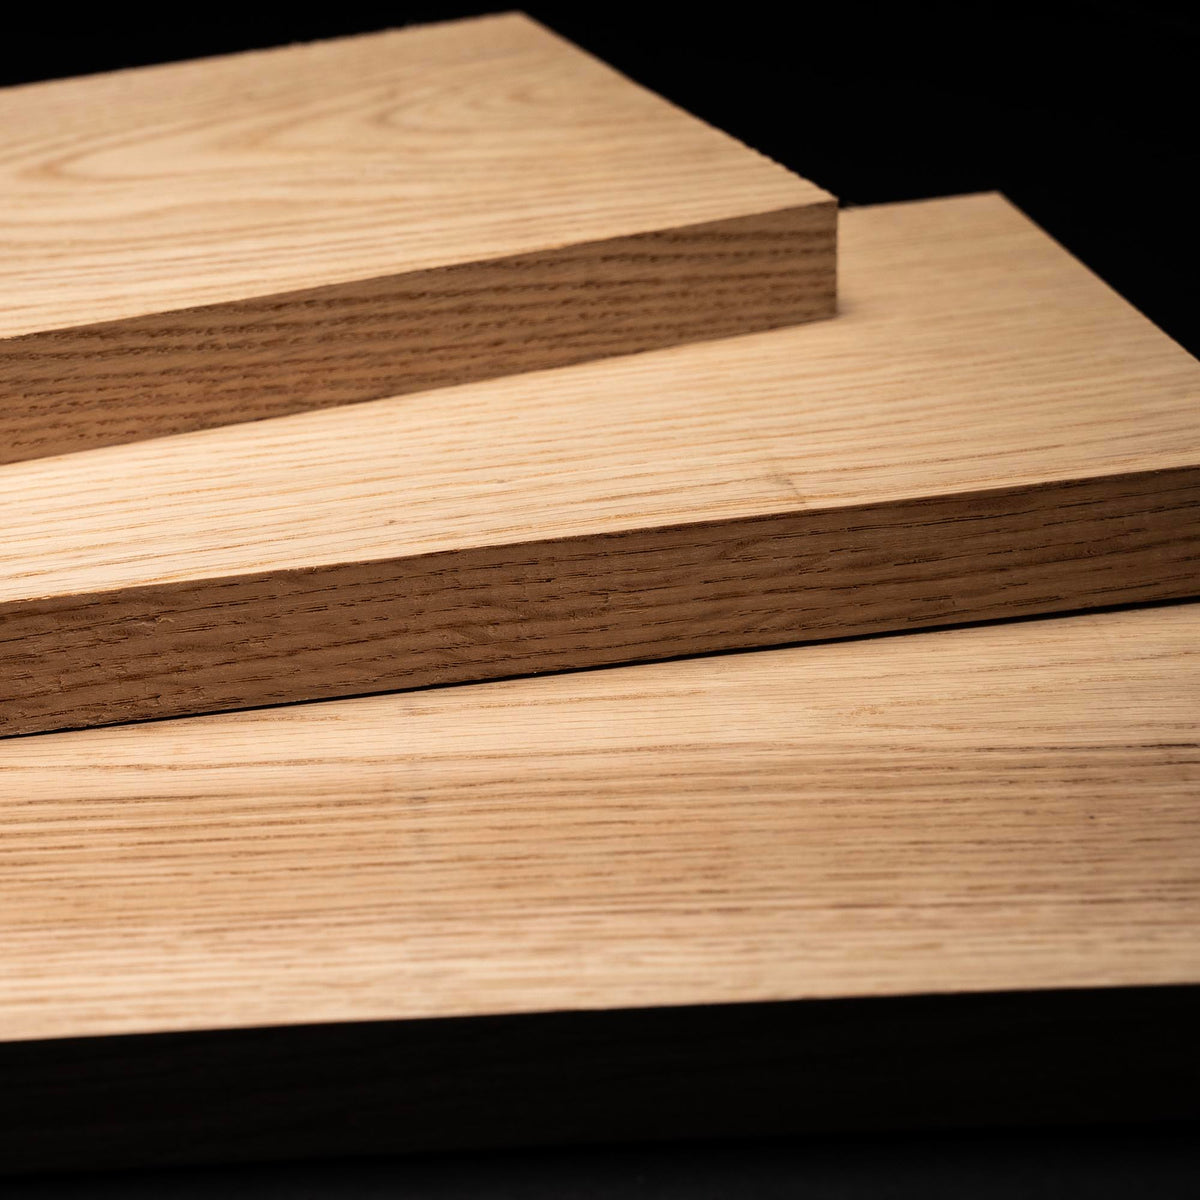 4/4 1” Red Oak Boards - Kiln Dried Dimensional Lumber - Cut to Size Red Oak Board